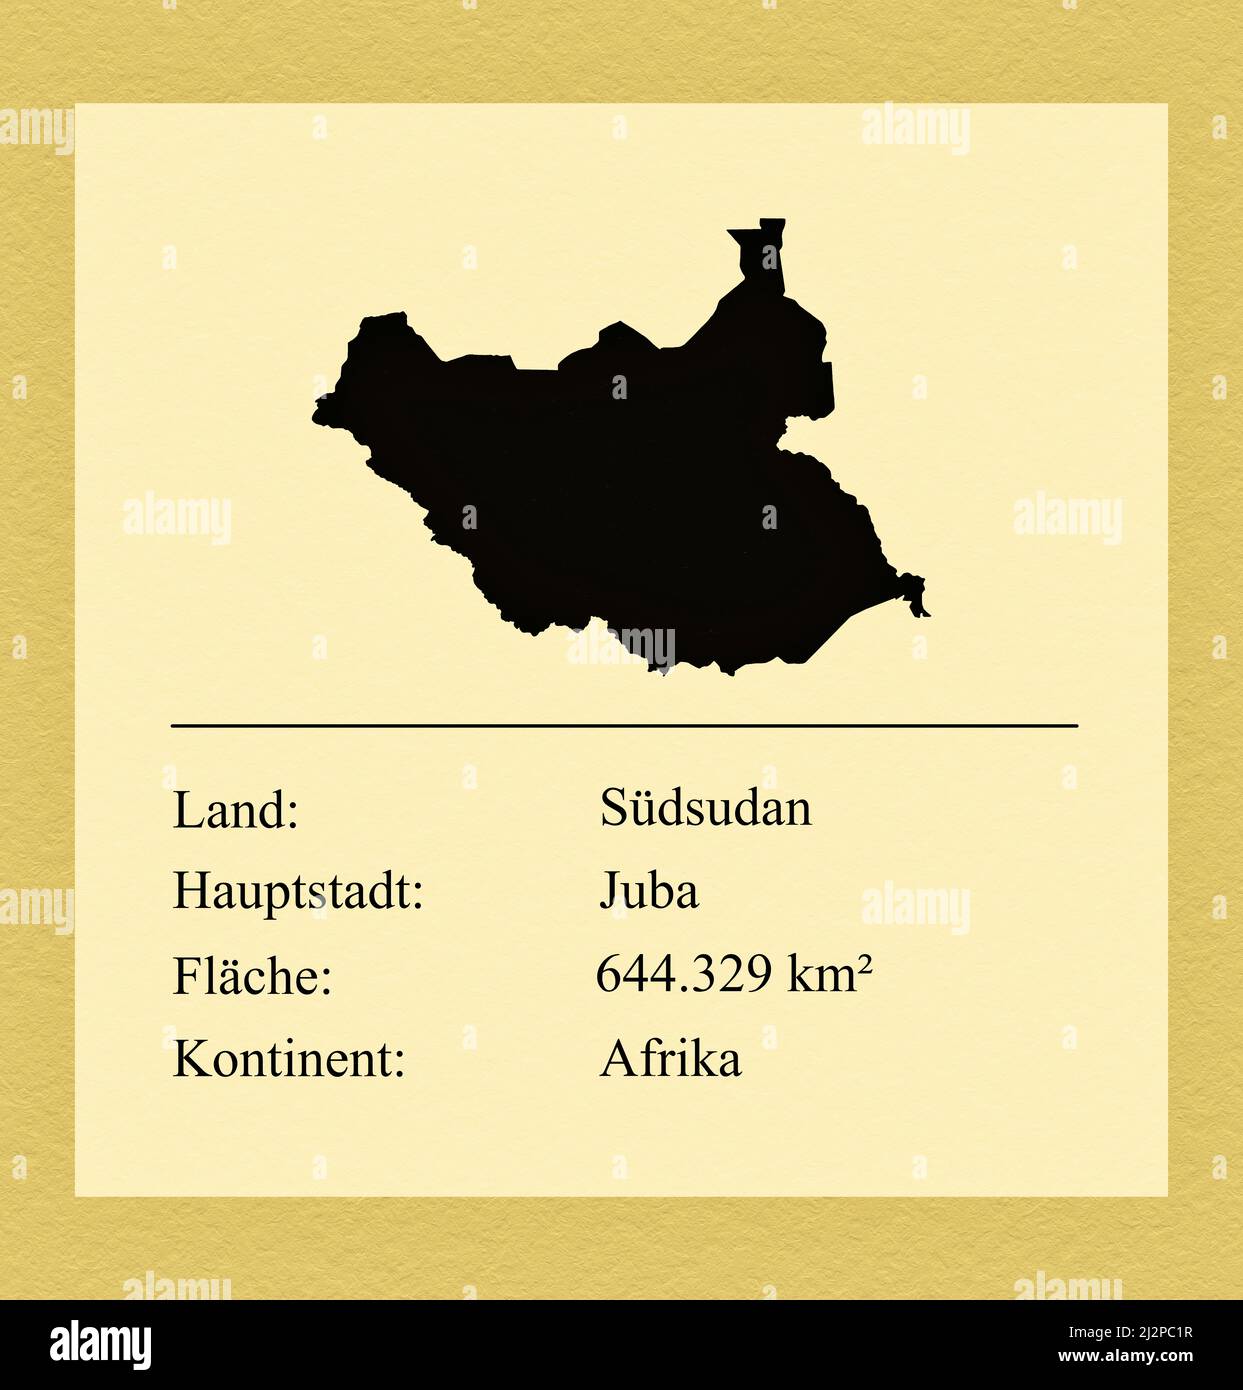 Umrisse des Landes Südsudan, darunter ein kleiner Steckbrief mit Ländernamen, Hauptstadt, Fläche und Kontinent Foto Stock